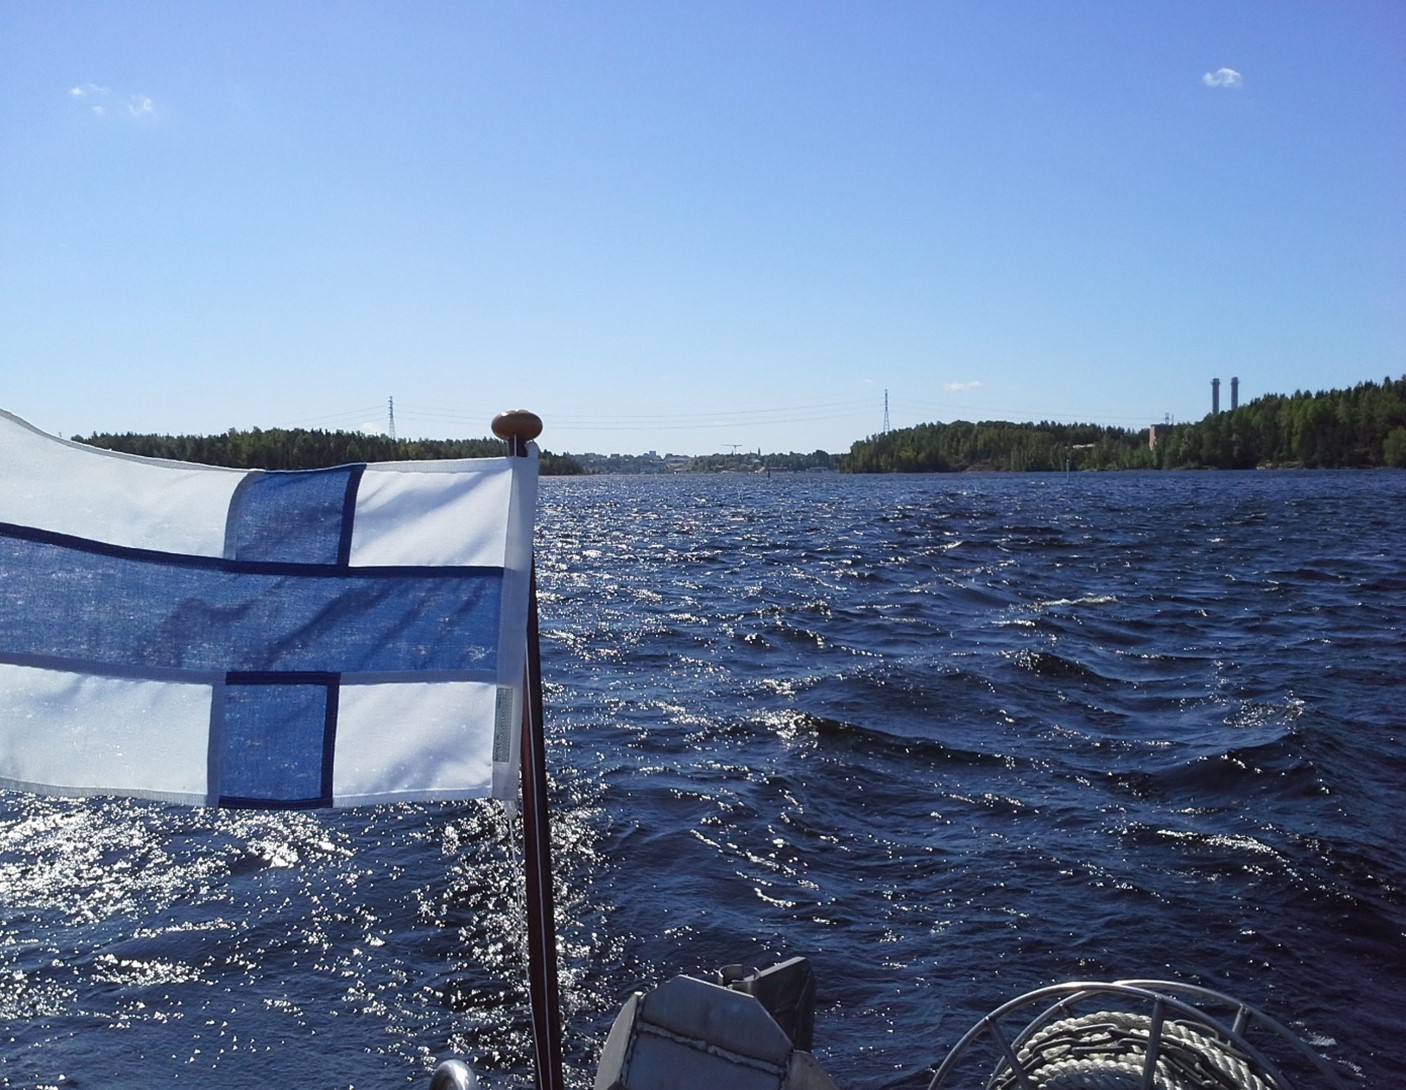 Vene, Suomen lippu, Saimaa